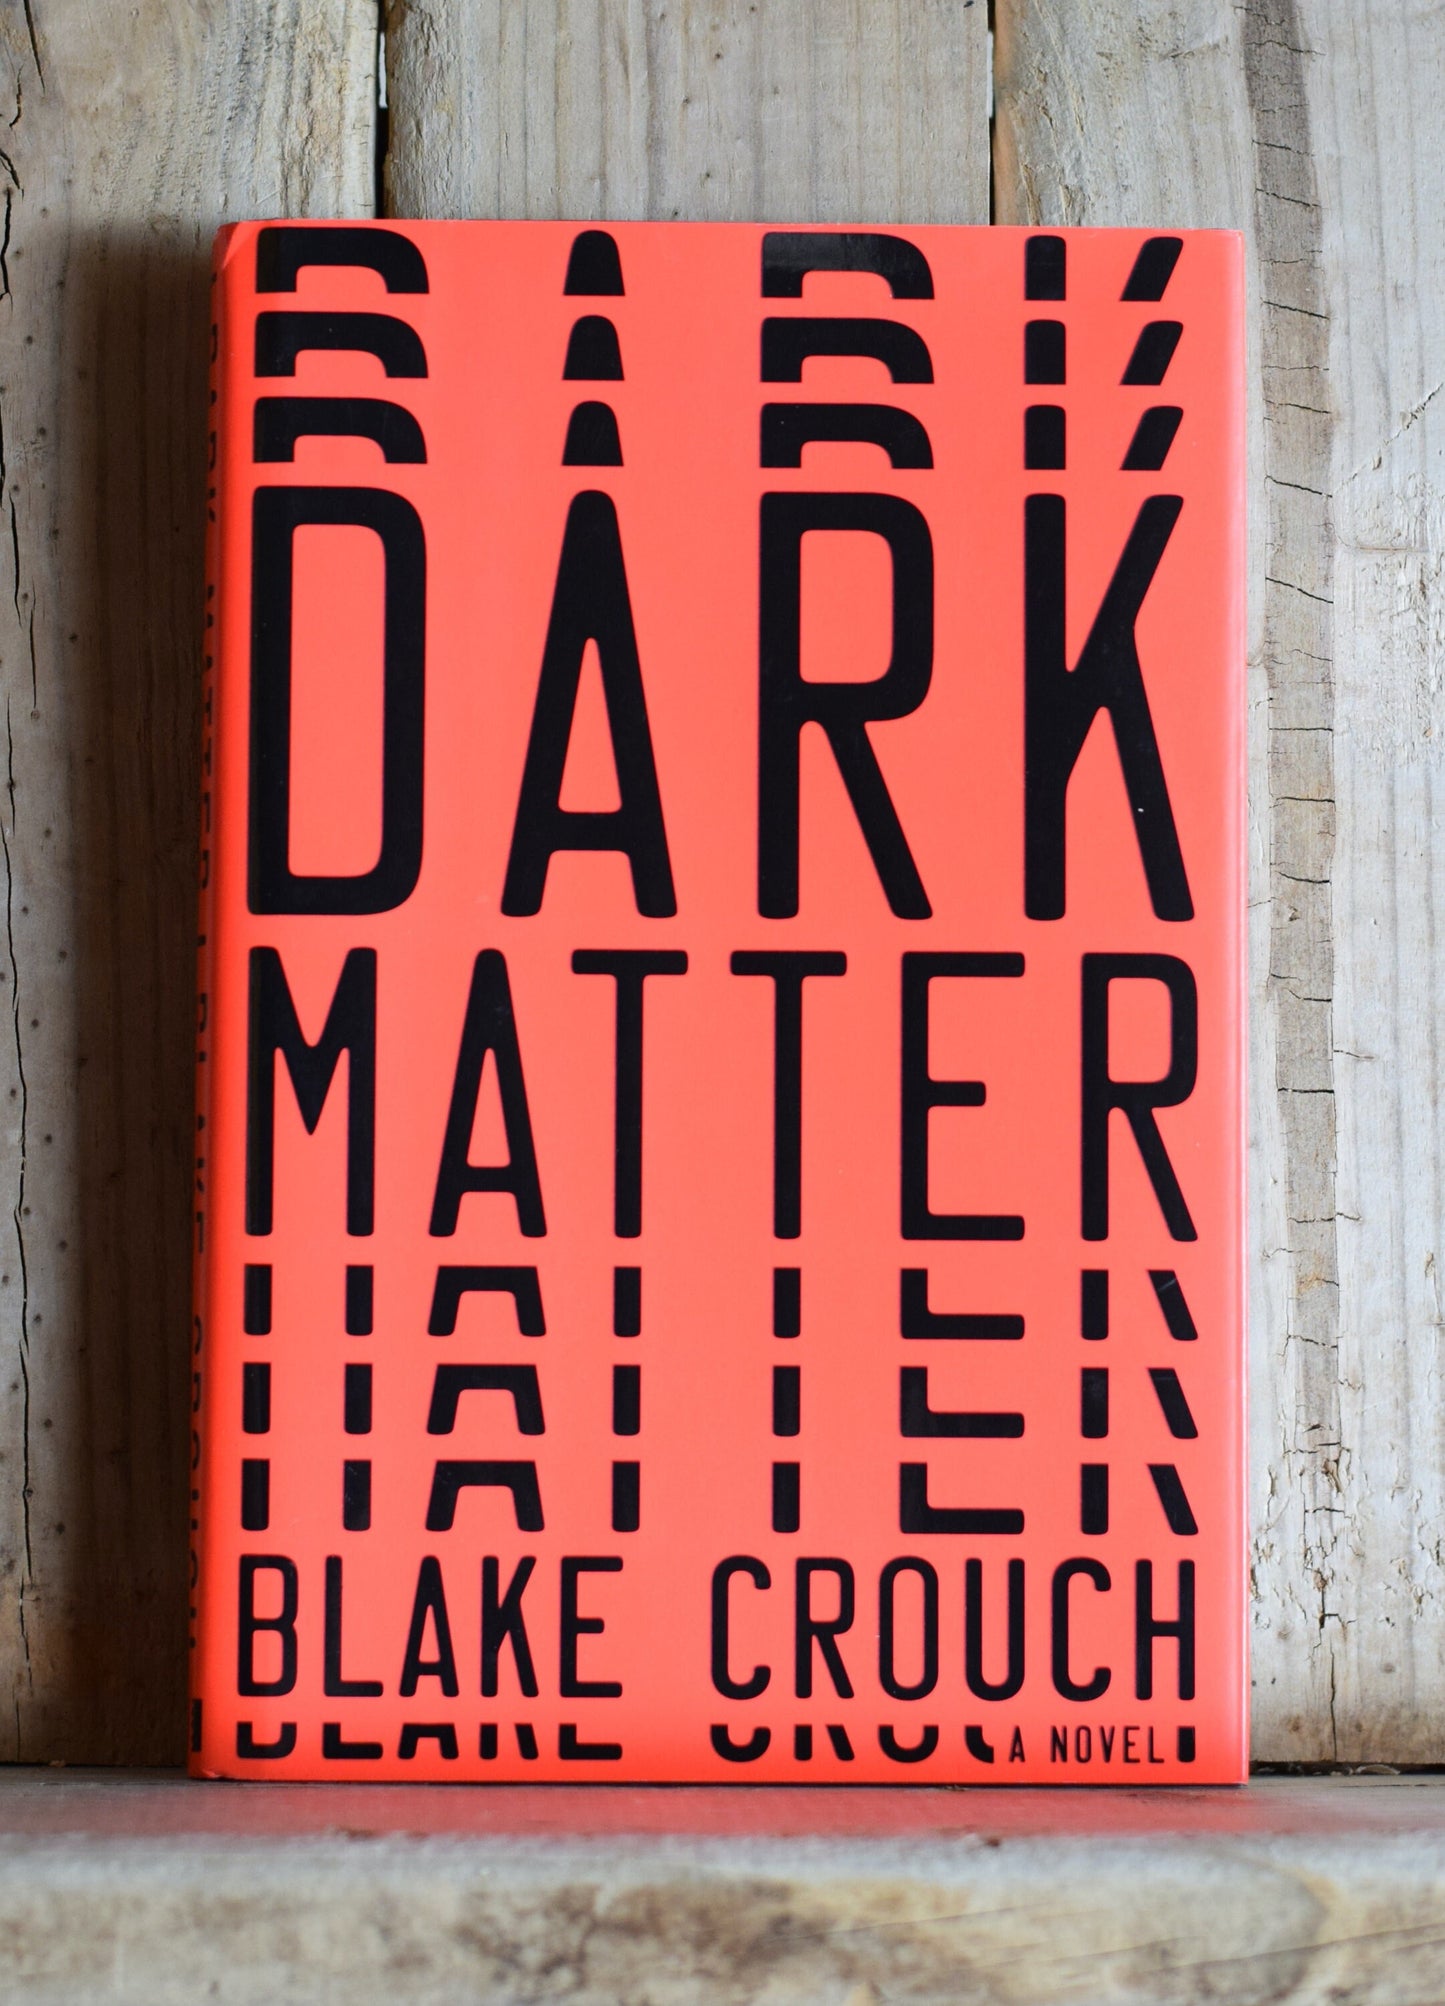 Sci-Fi Hardback Novel: Blake Crouch - Dark Matter FIRST EDITION